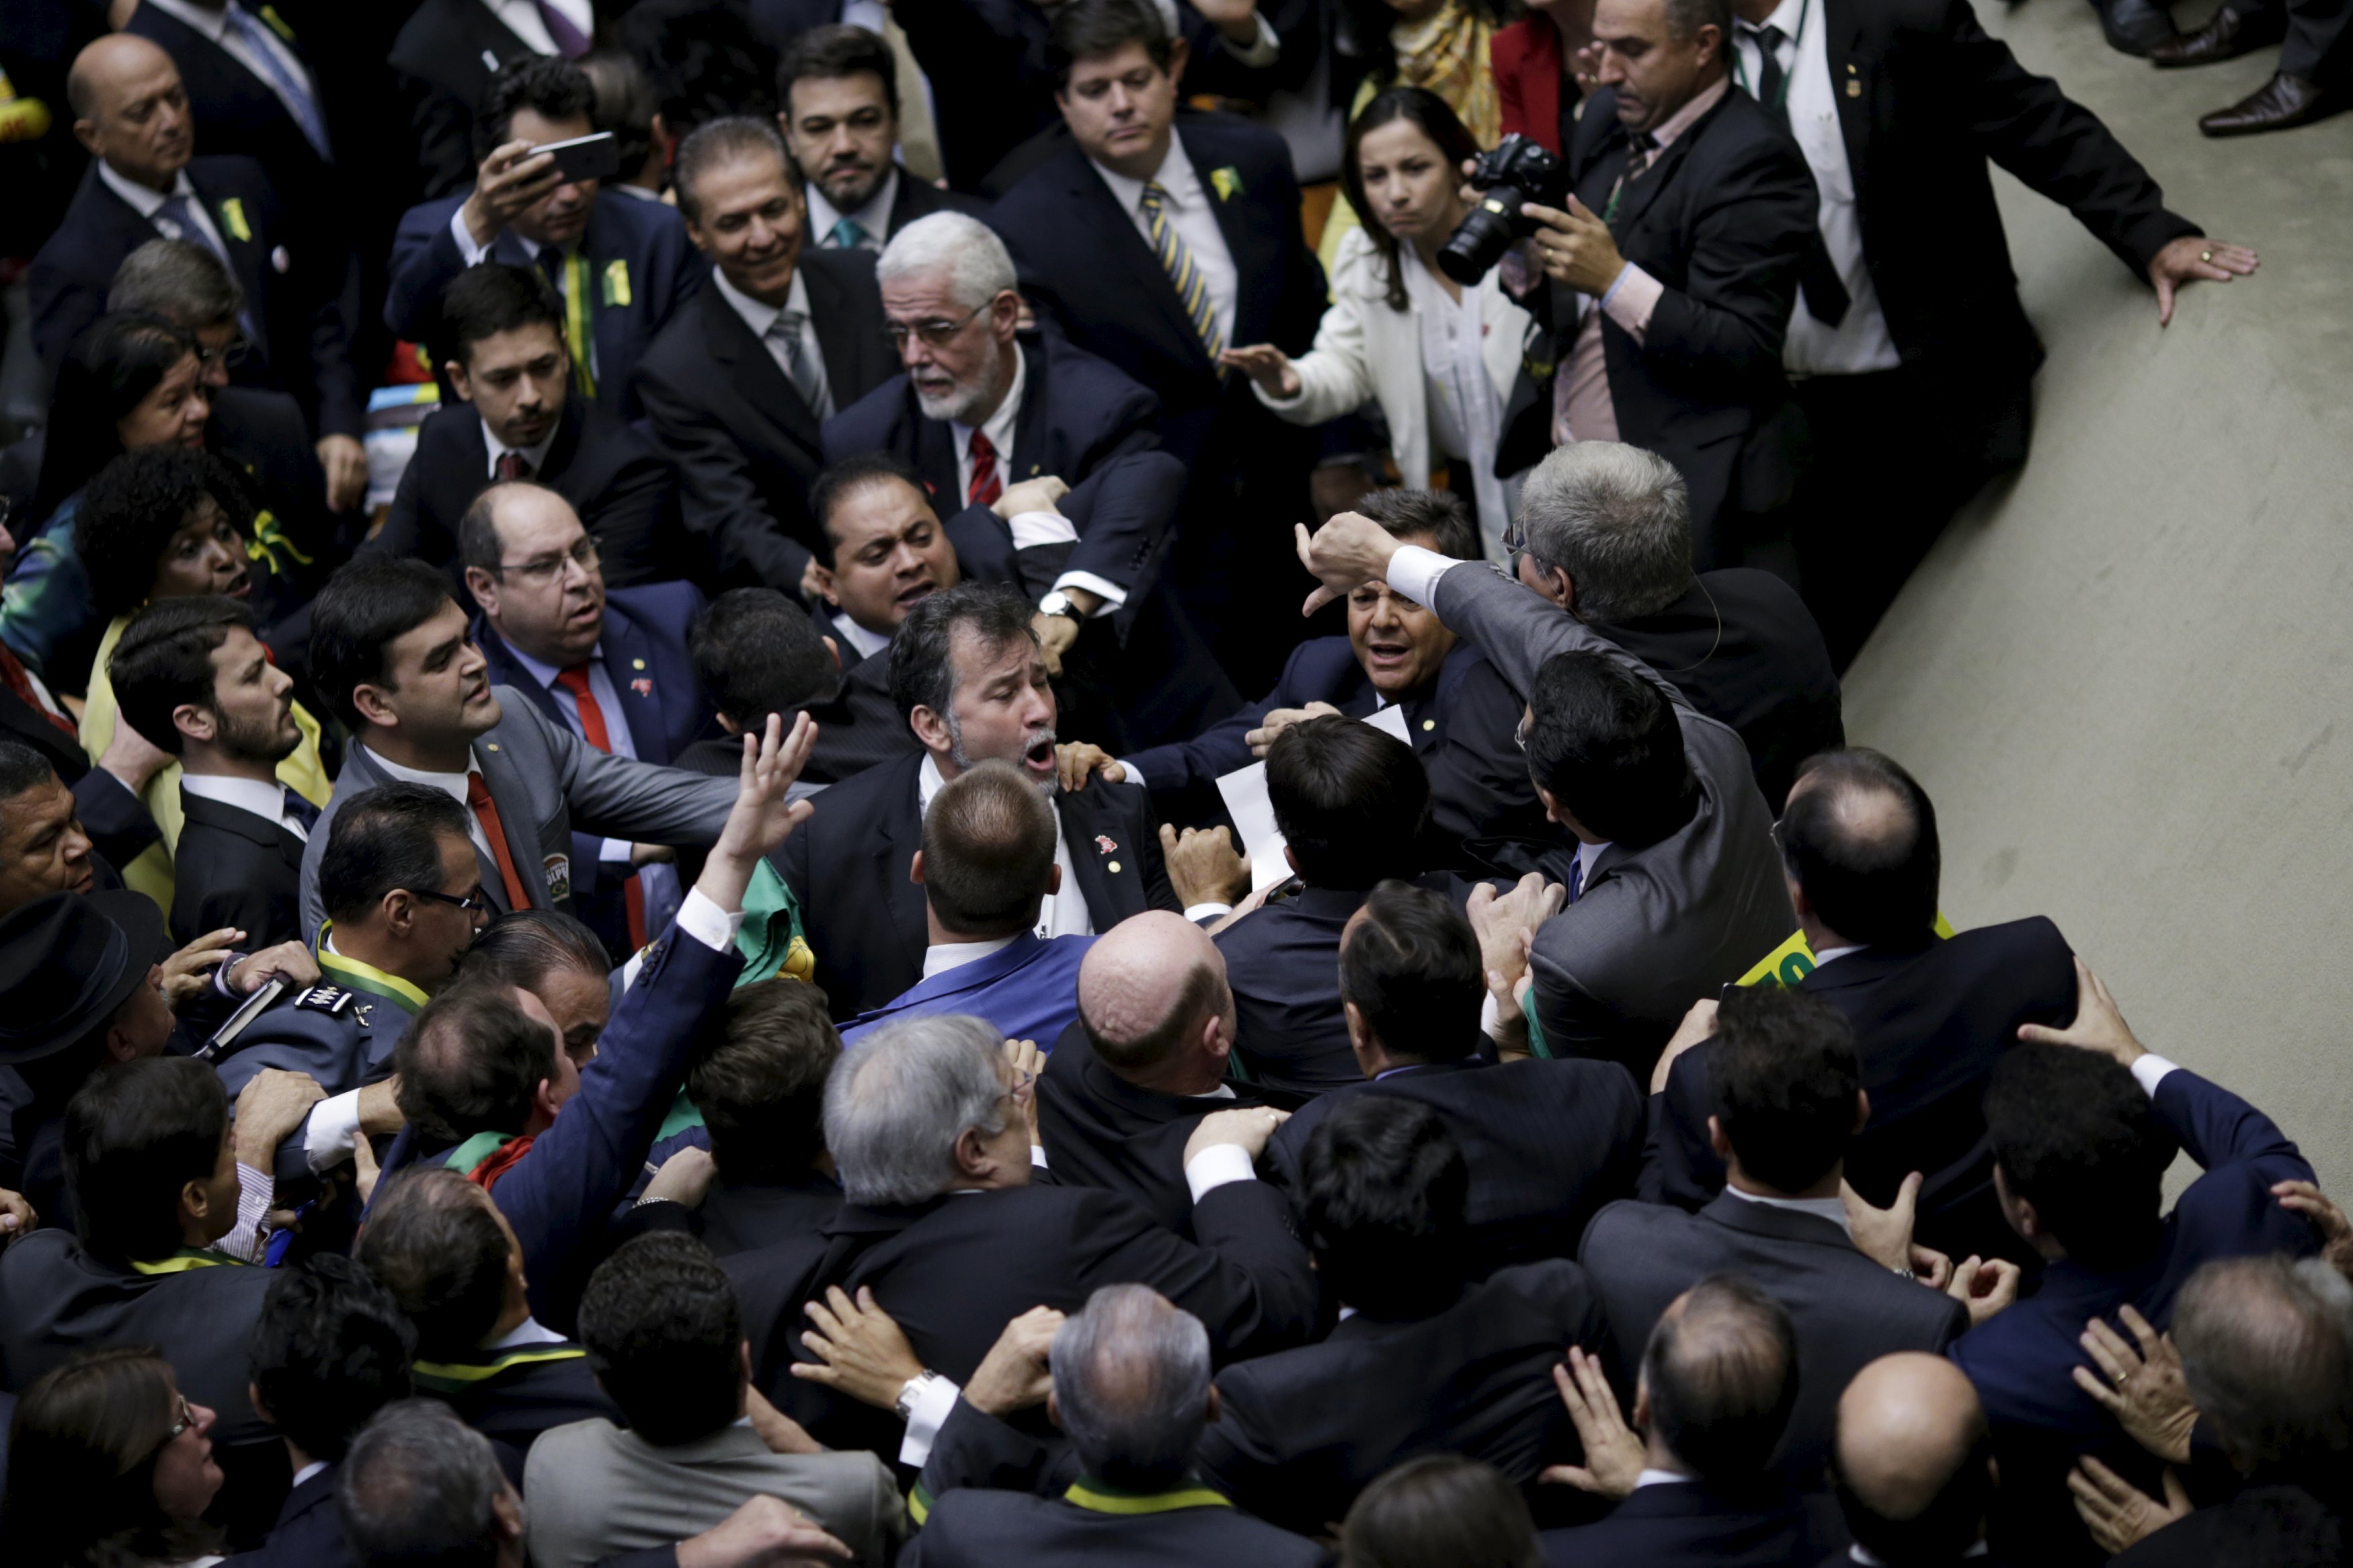 El juicio político contra Rousseff es considerado un golpe contra la mandataria elegida democráticamente.